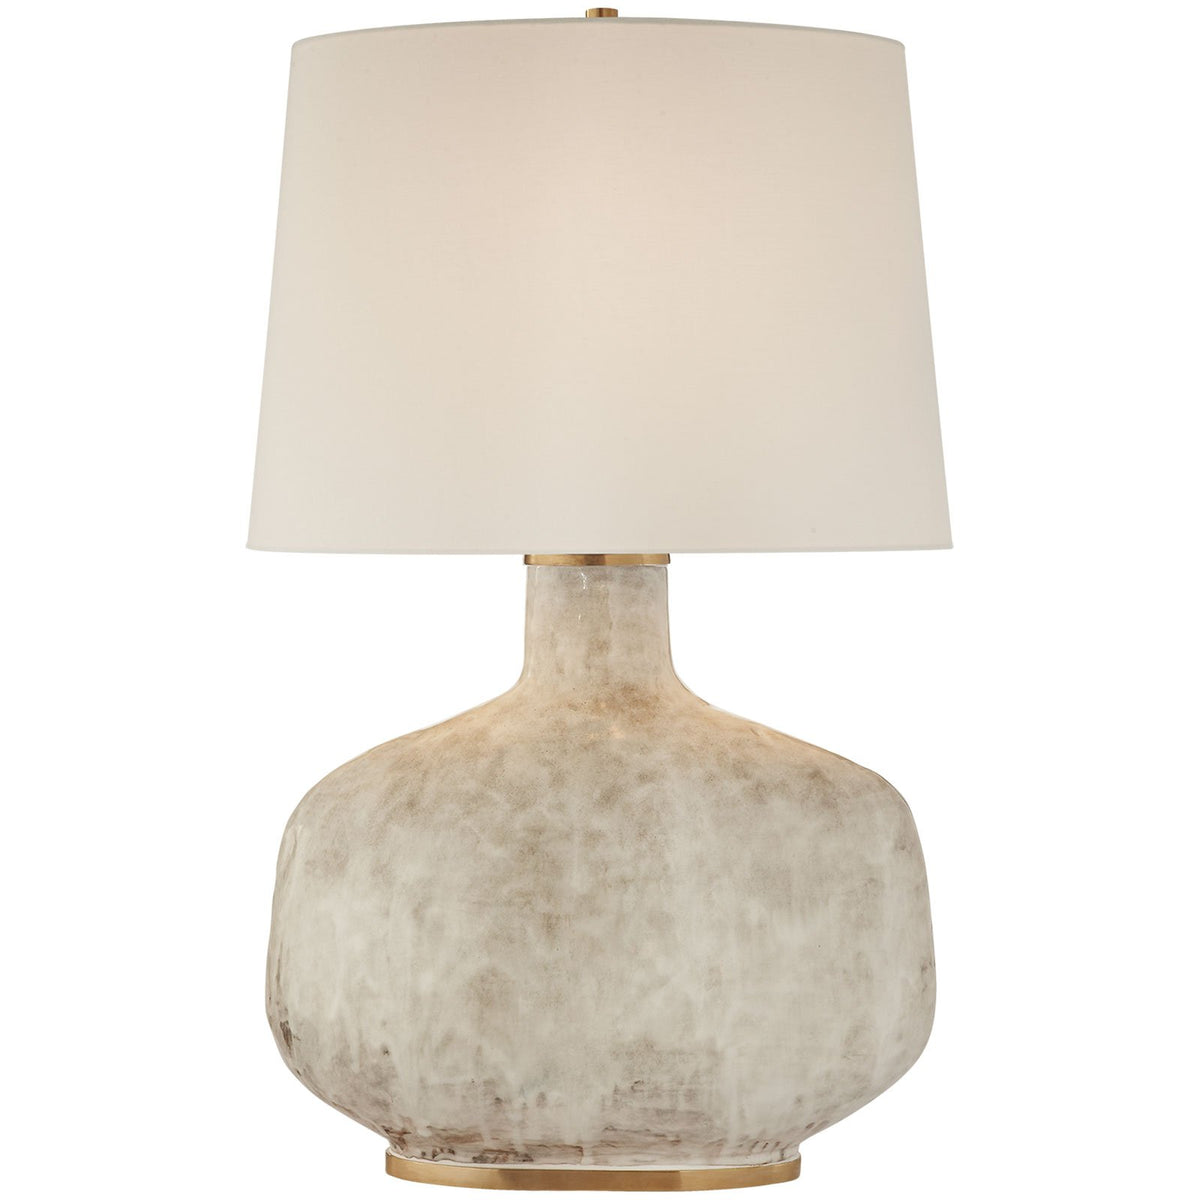 Beton Table Lamp, White